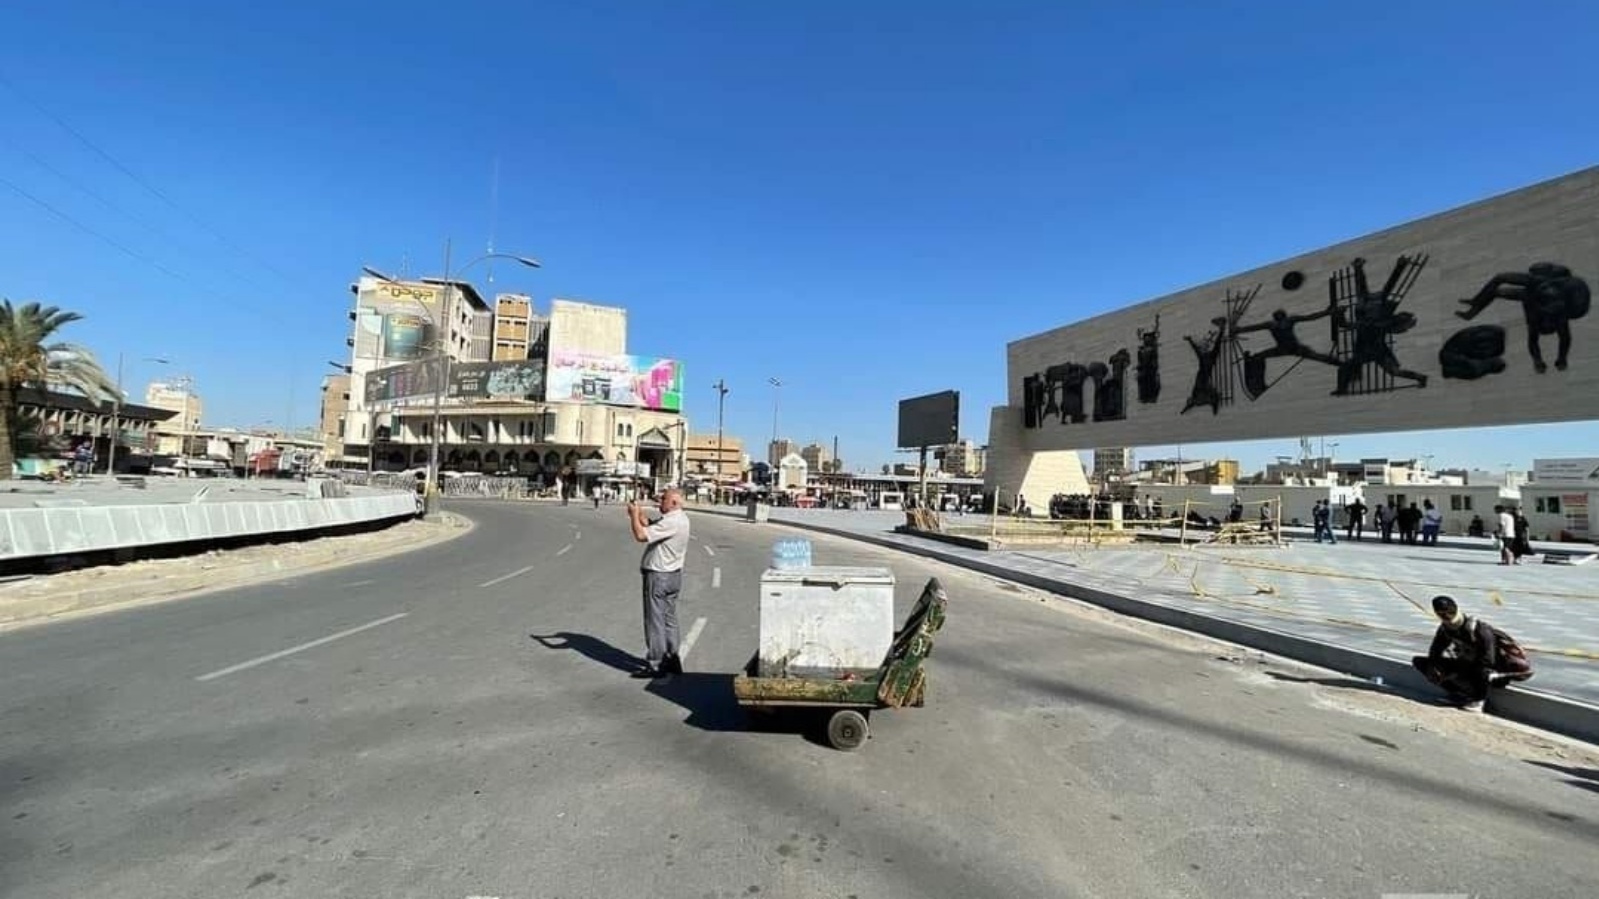 إغلاق الطرق الرئيسية الى ساحة التحرير مركز الاحتجاجات وسط بغداد بانتظار خروج تظاهرات احتجاج الثلاثاء 25 أكتوبر 2022 (تويتر)